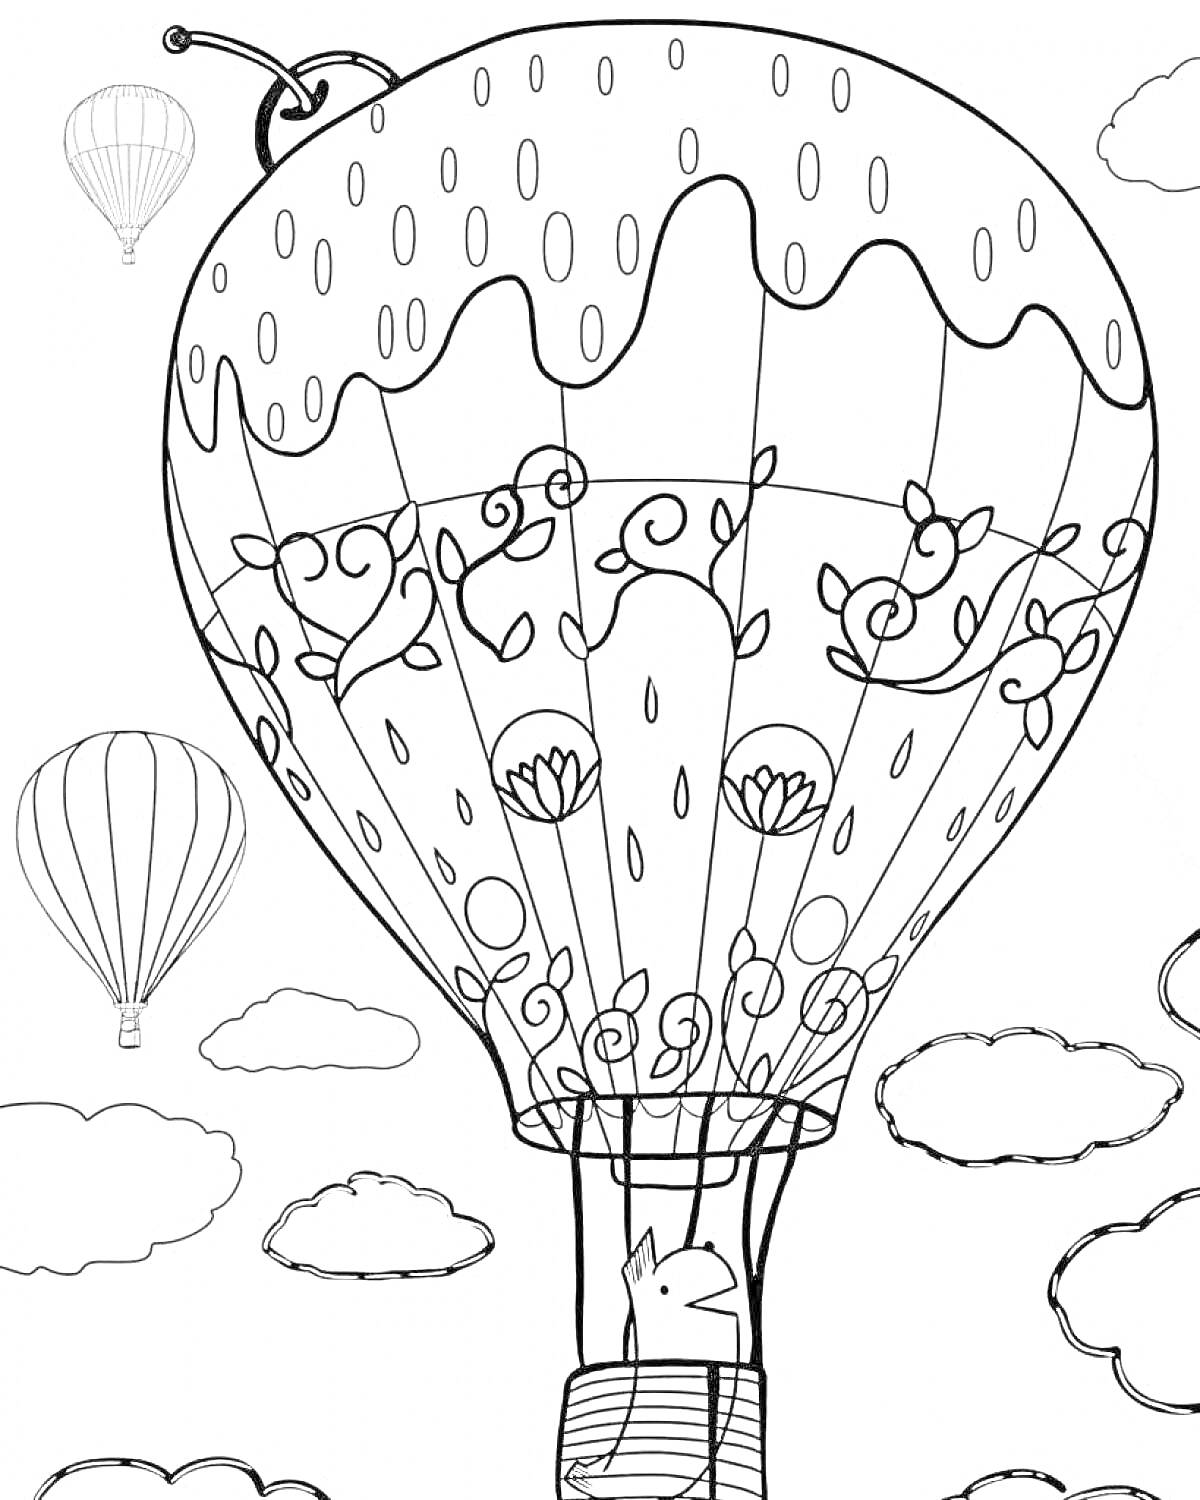 Раскраска воздушный шар с узорной оболочкой и фигуркой животного в корзине, окружающие воздушные шары и облака